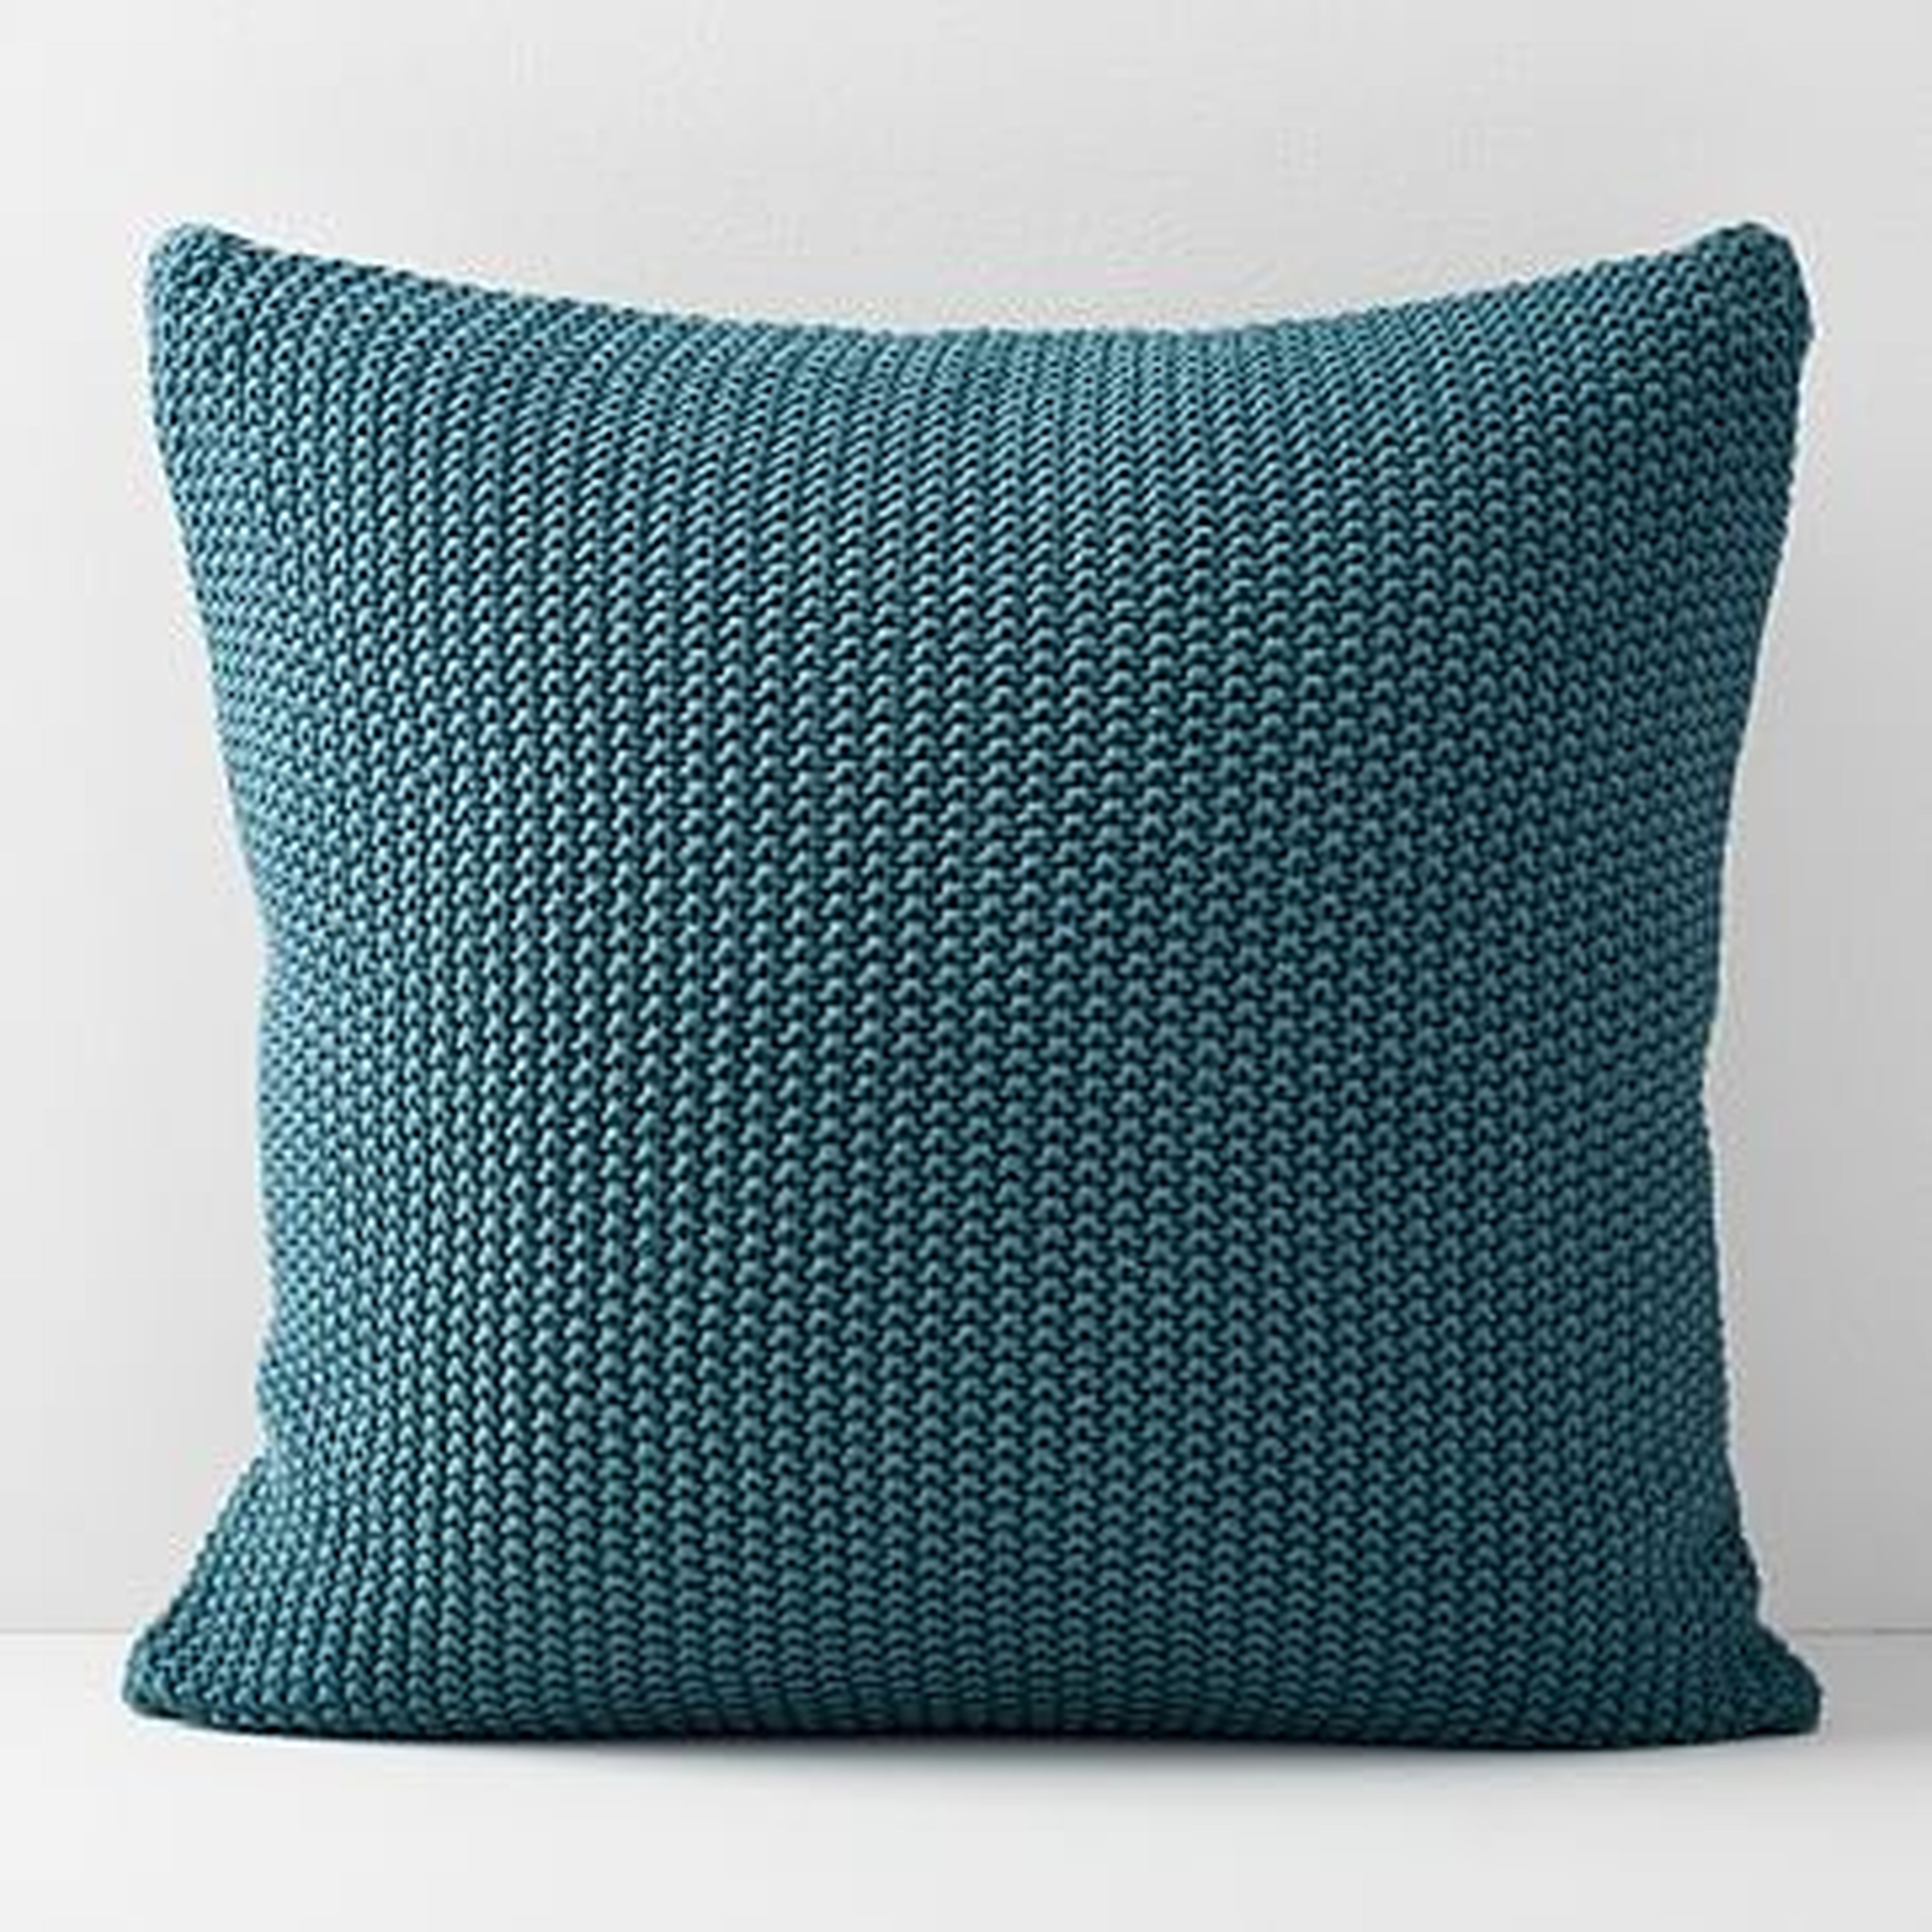 Cotton Knit Pillow Cover, Mineral Blue, 24"x24" - West Elm